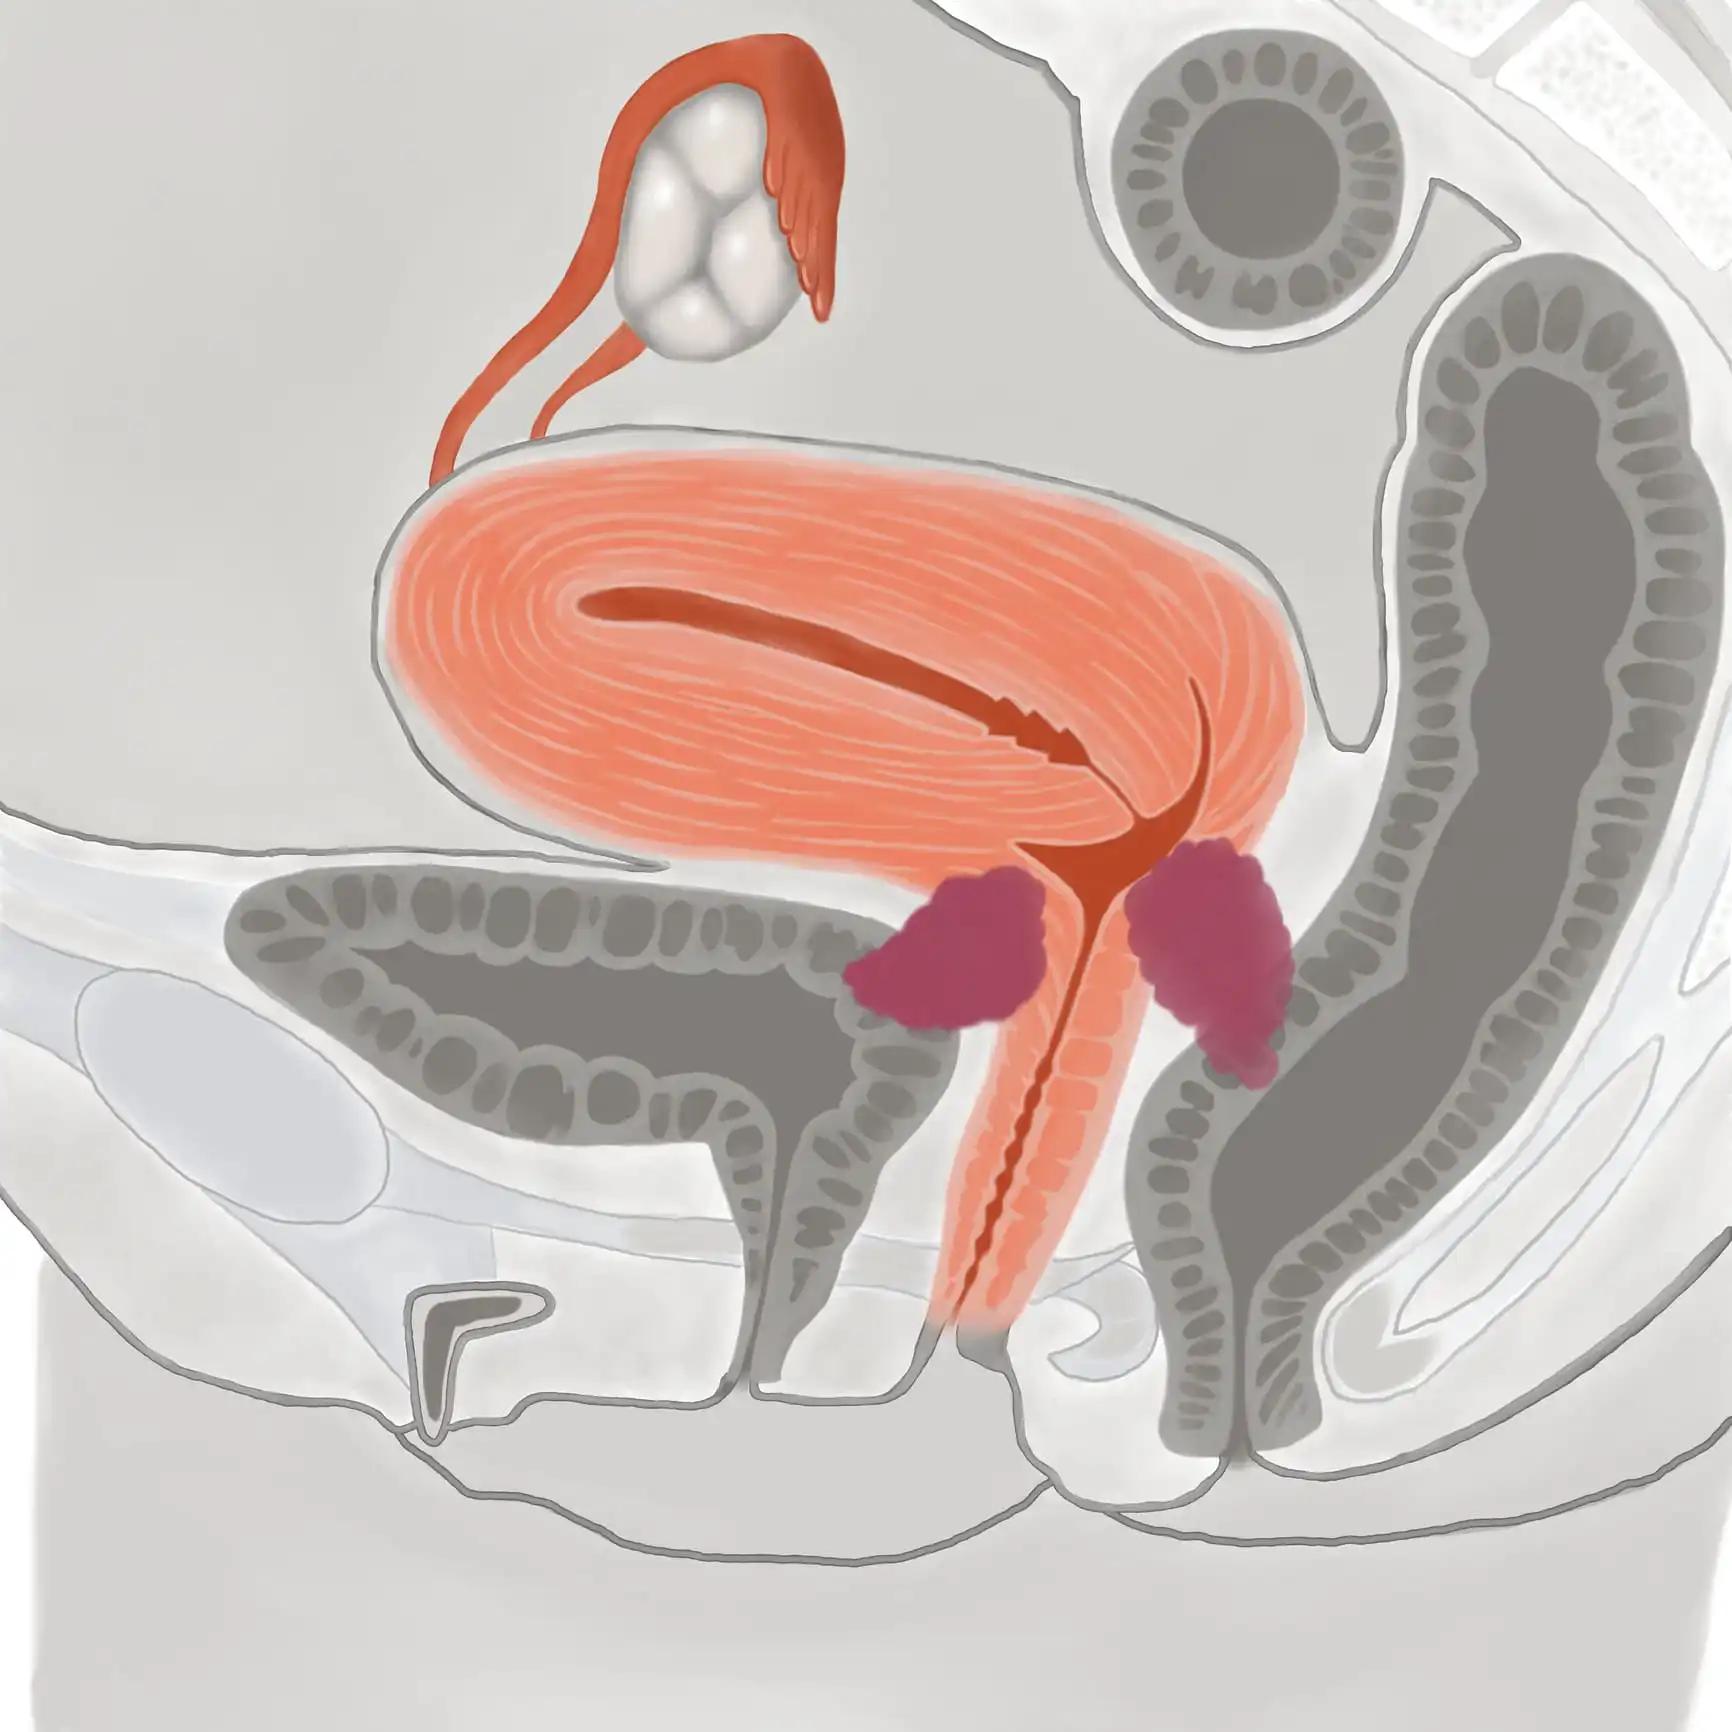 Illustration of Stage ⅣB Cervical Cancer